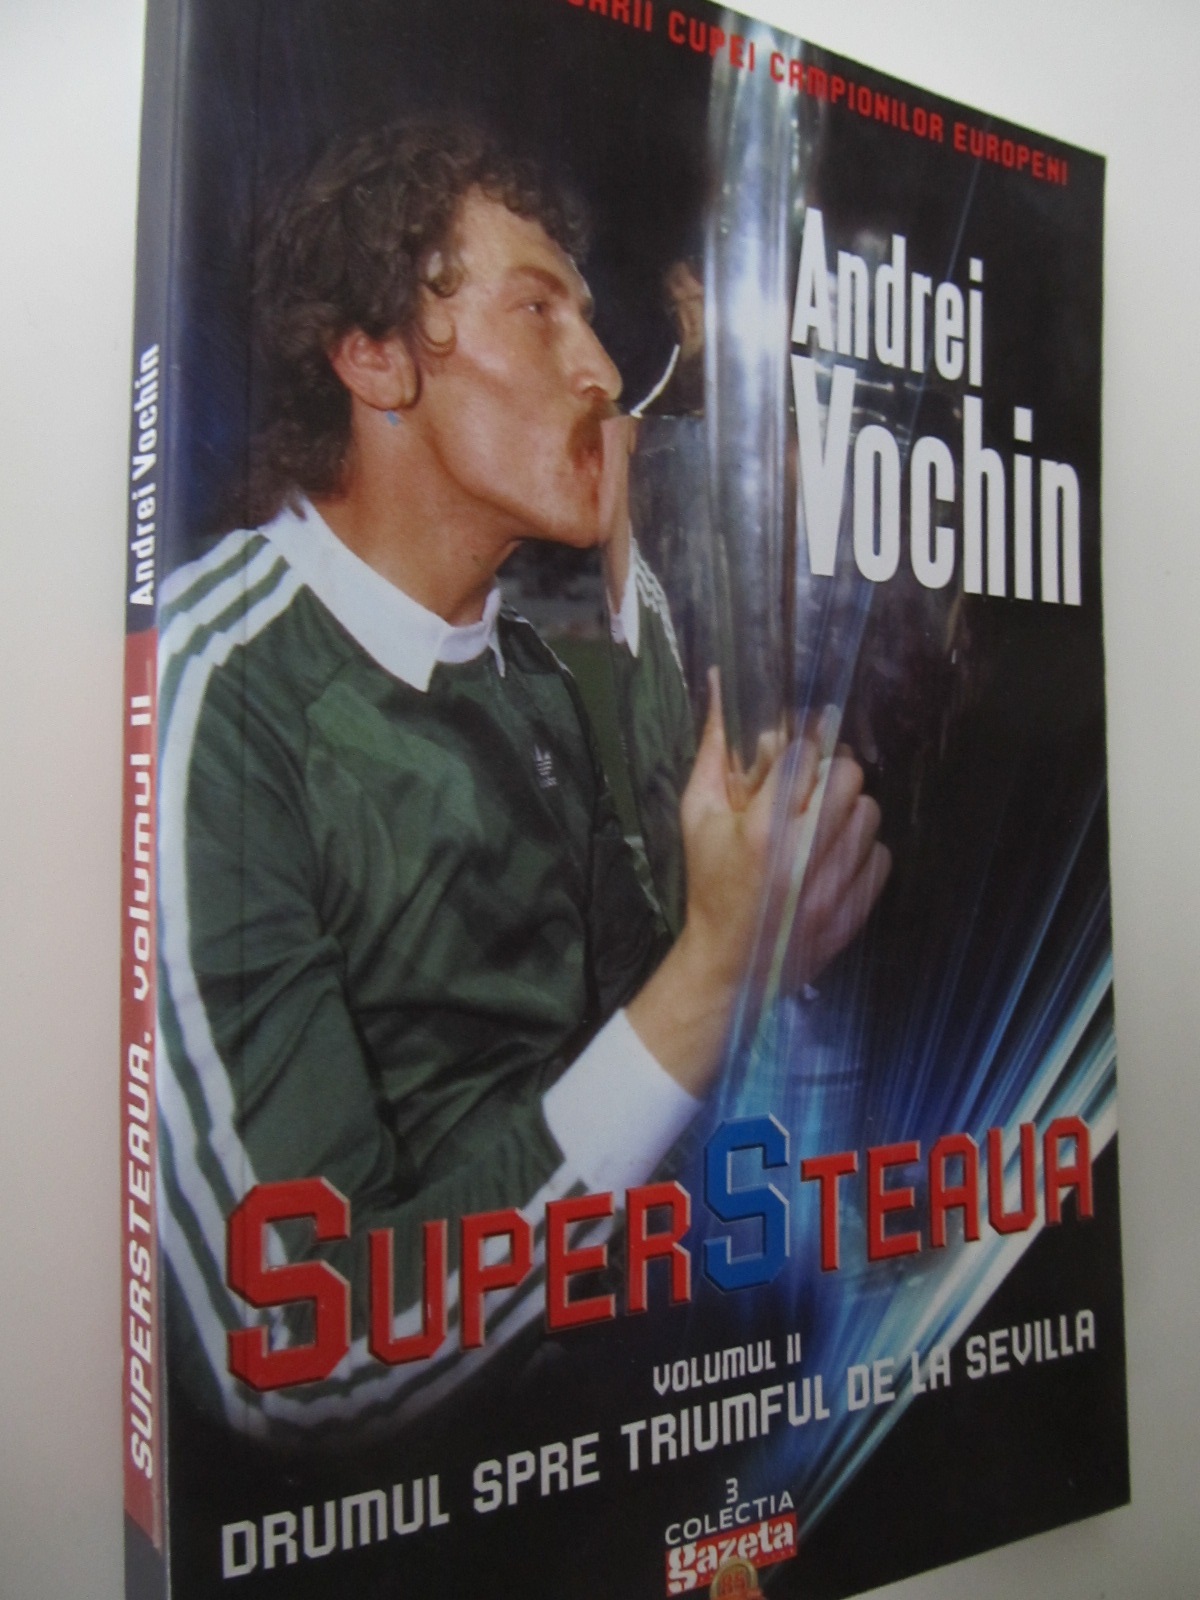 Super Steaua (vol. 2) - Drumul spre triumful de la Sevilla - Andrei Vochin | Detalii carte